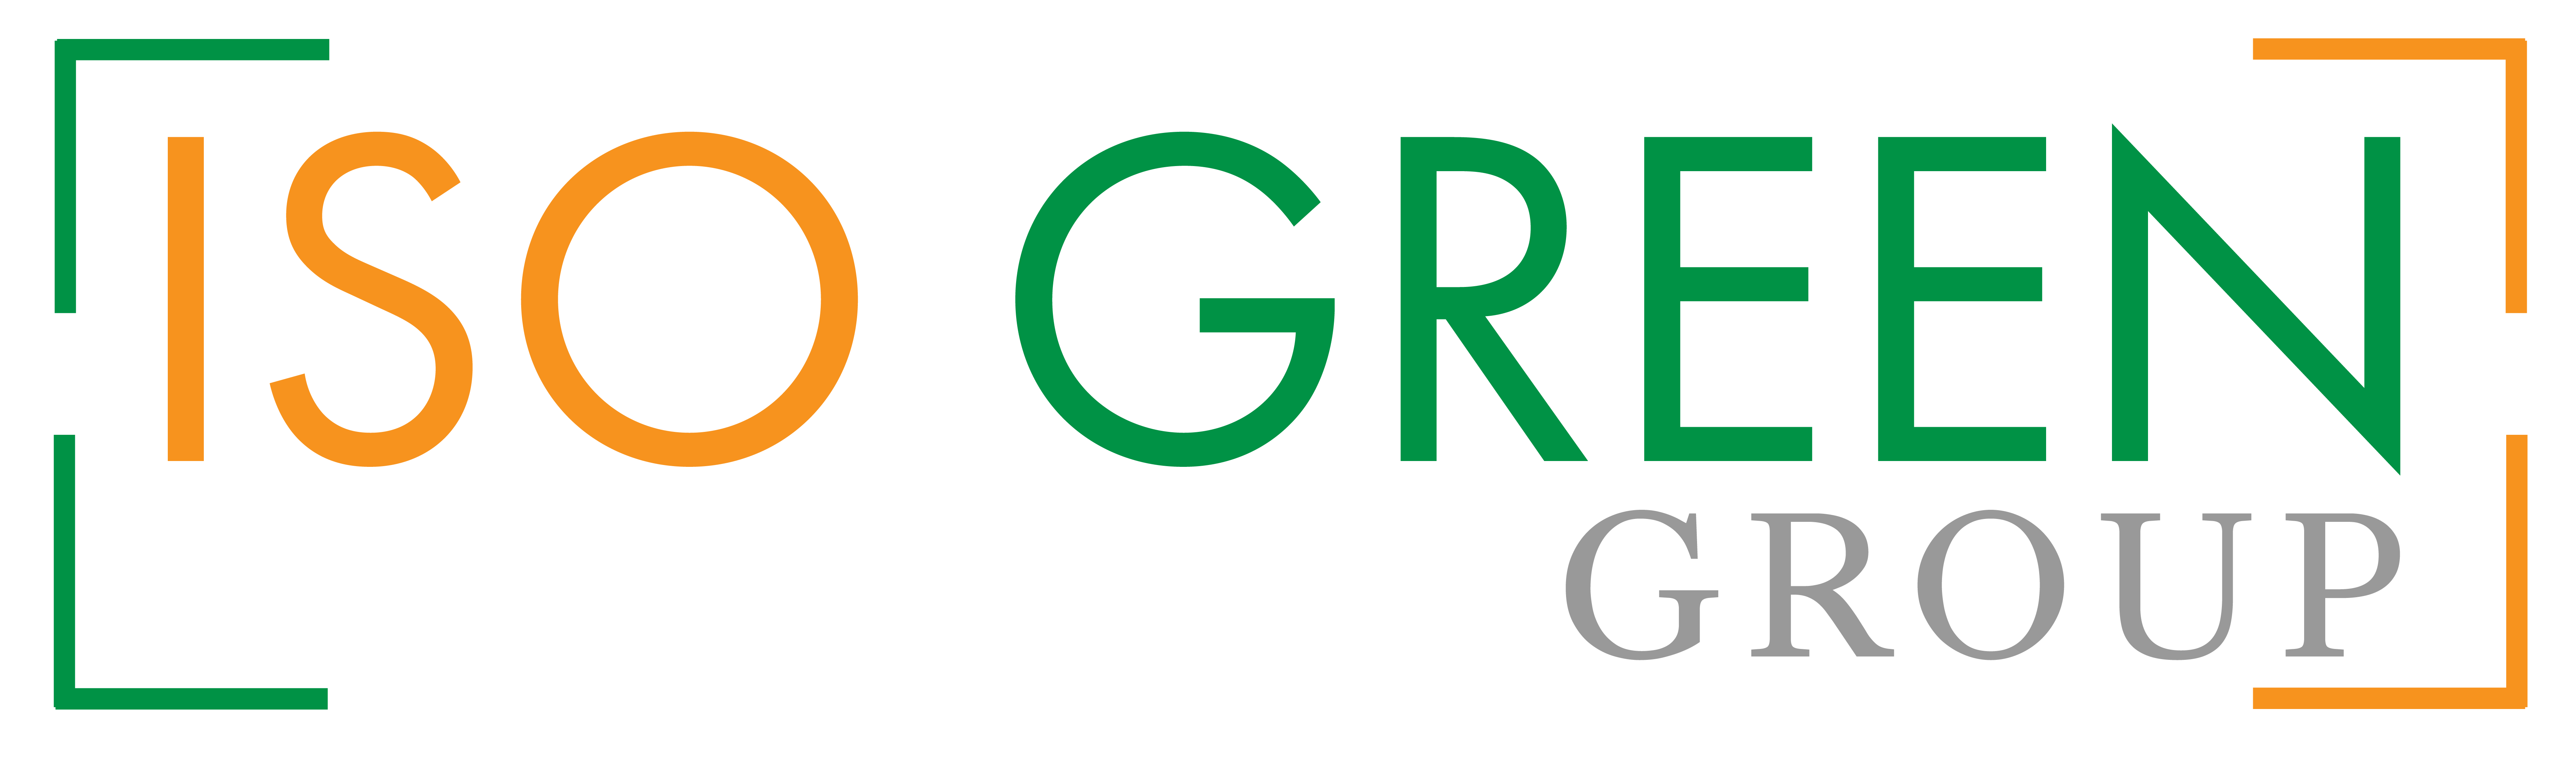 Logo_IsoGreen Group